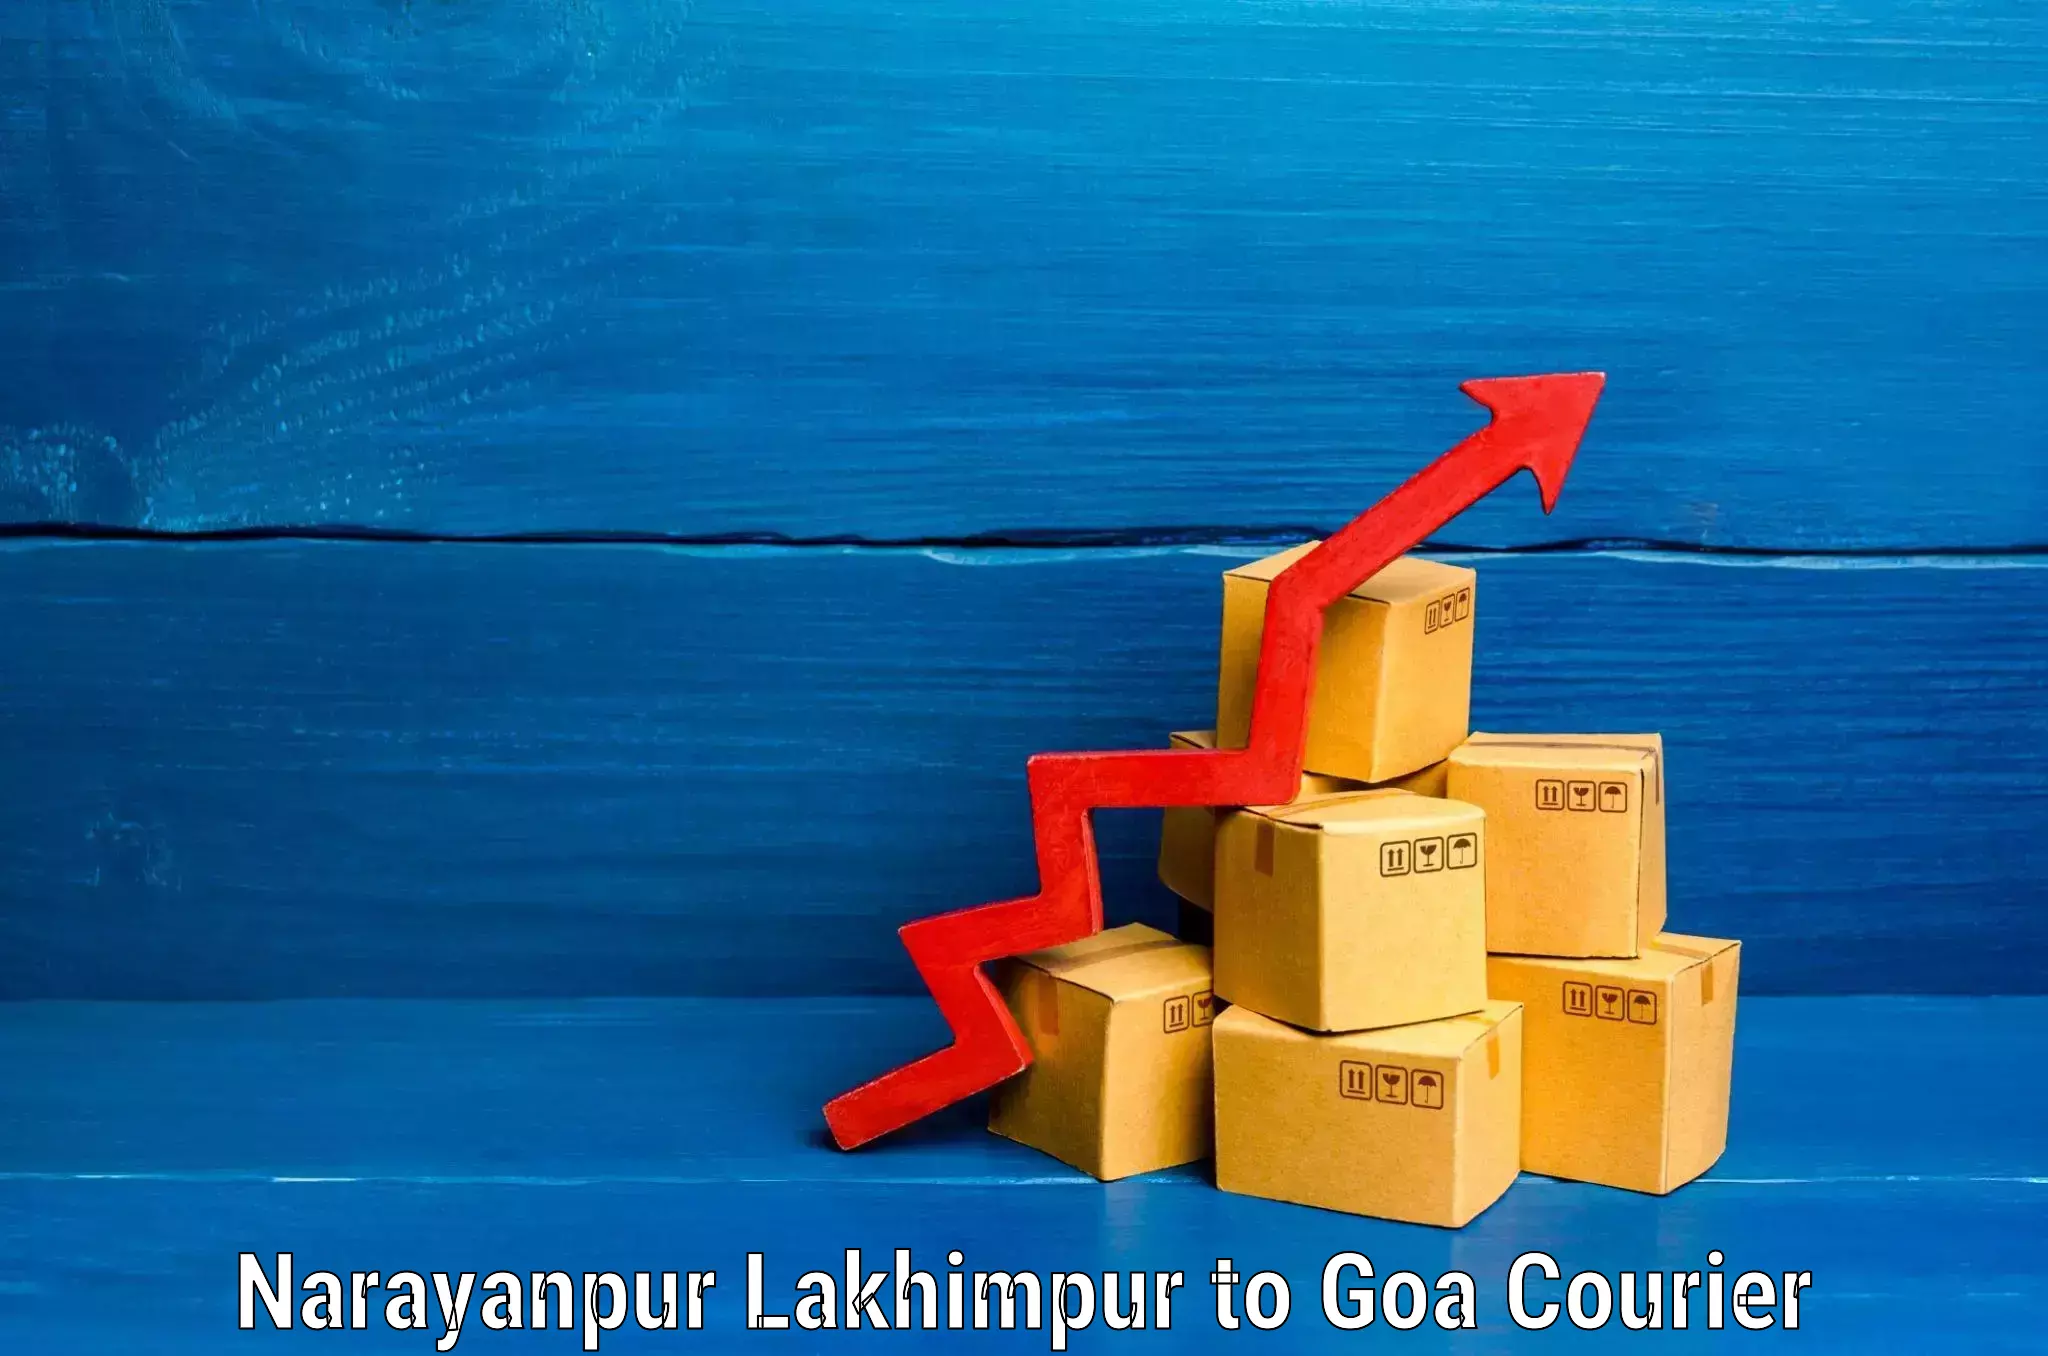 Baggage transport estimate Narayanpur Lakhimpur to NIT Goa